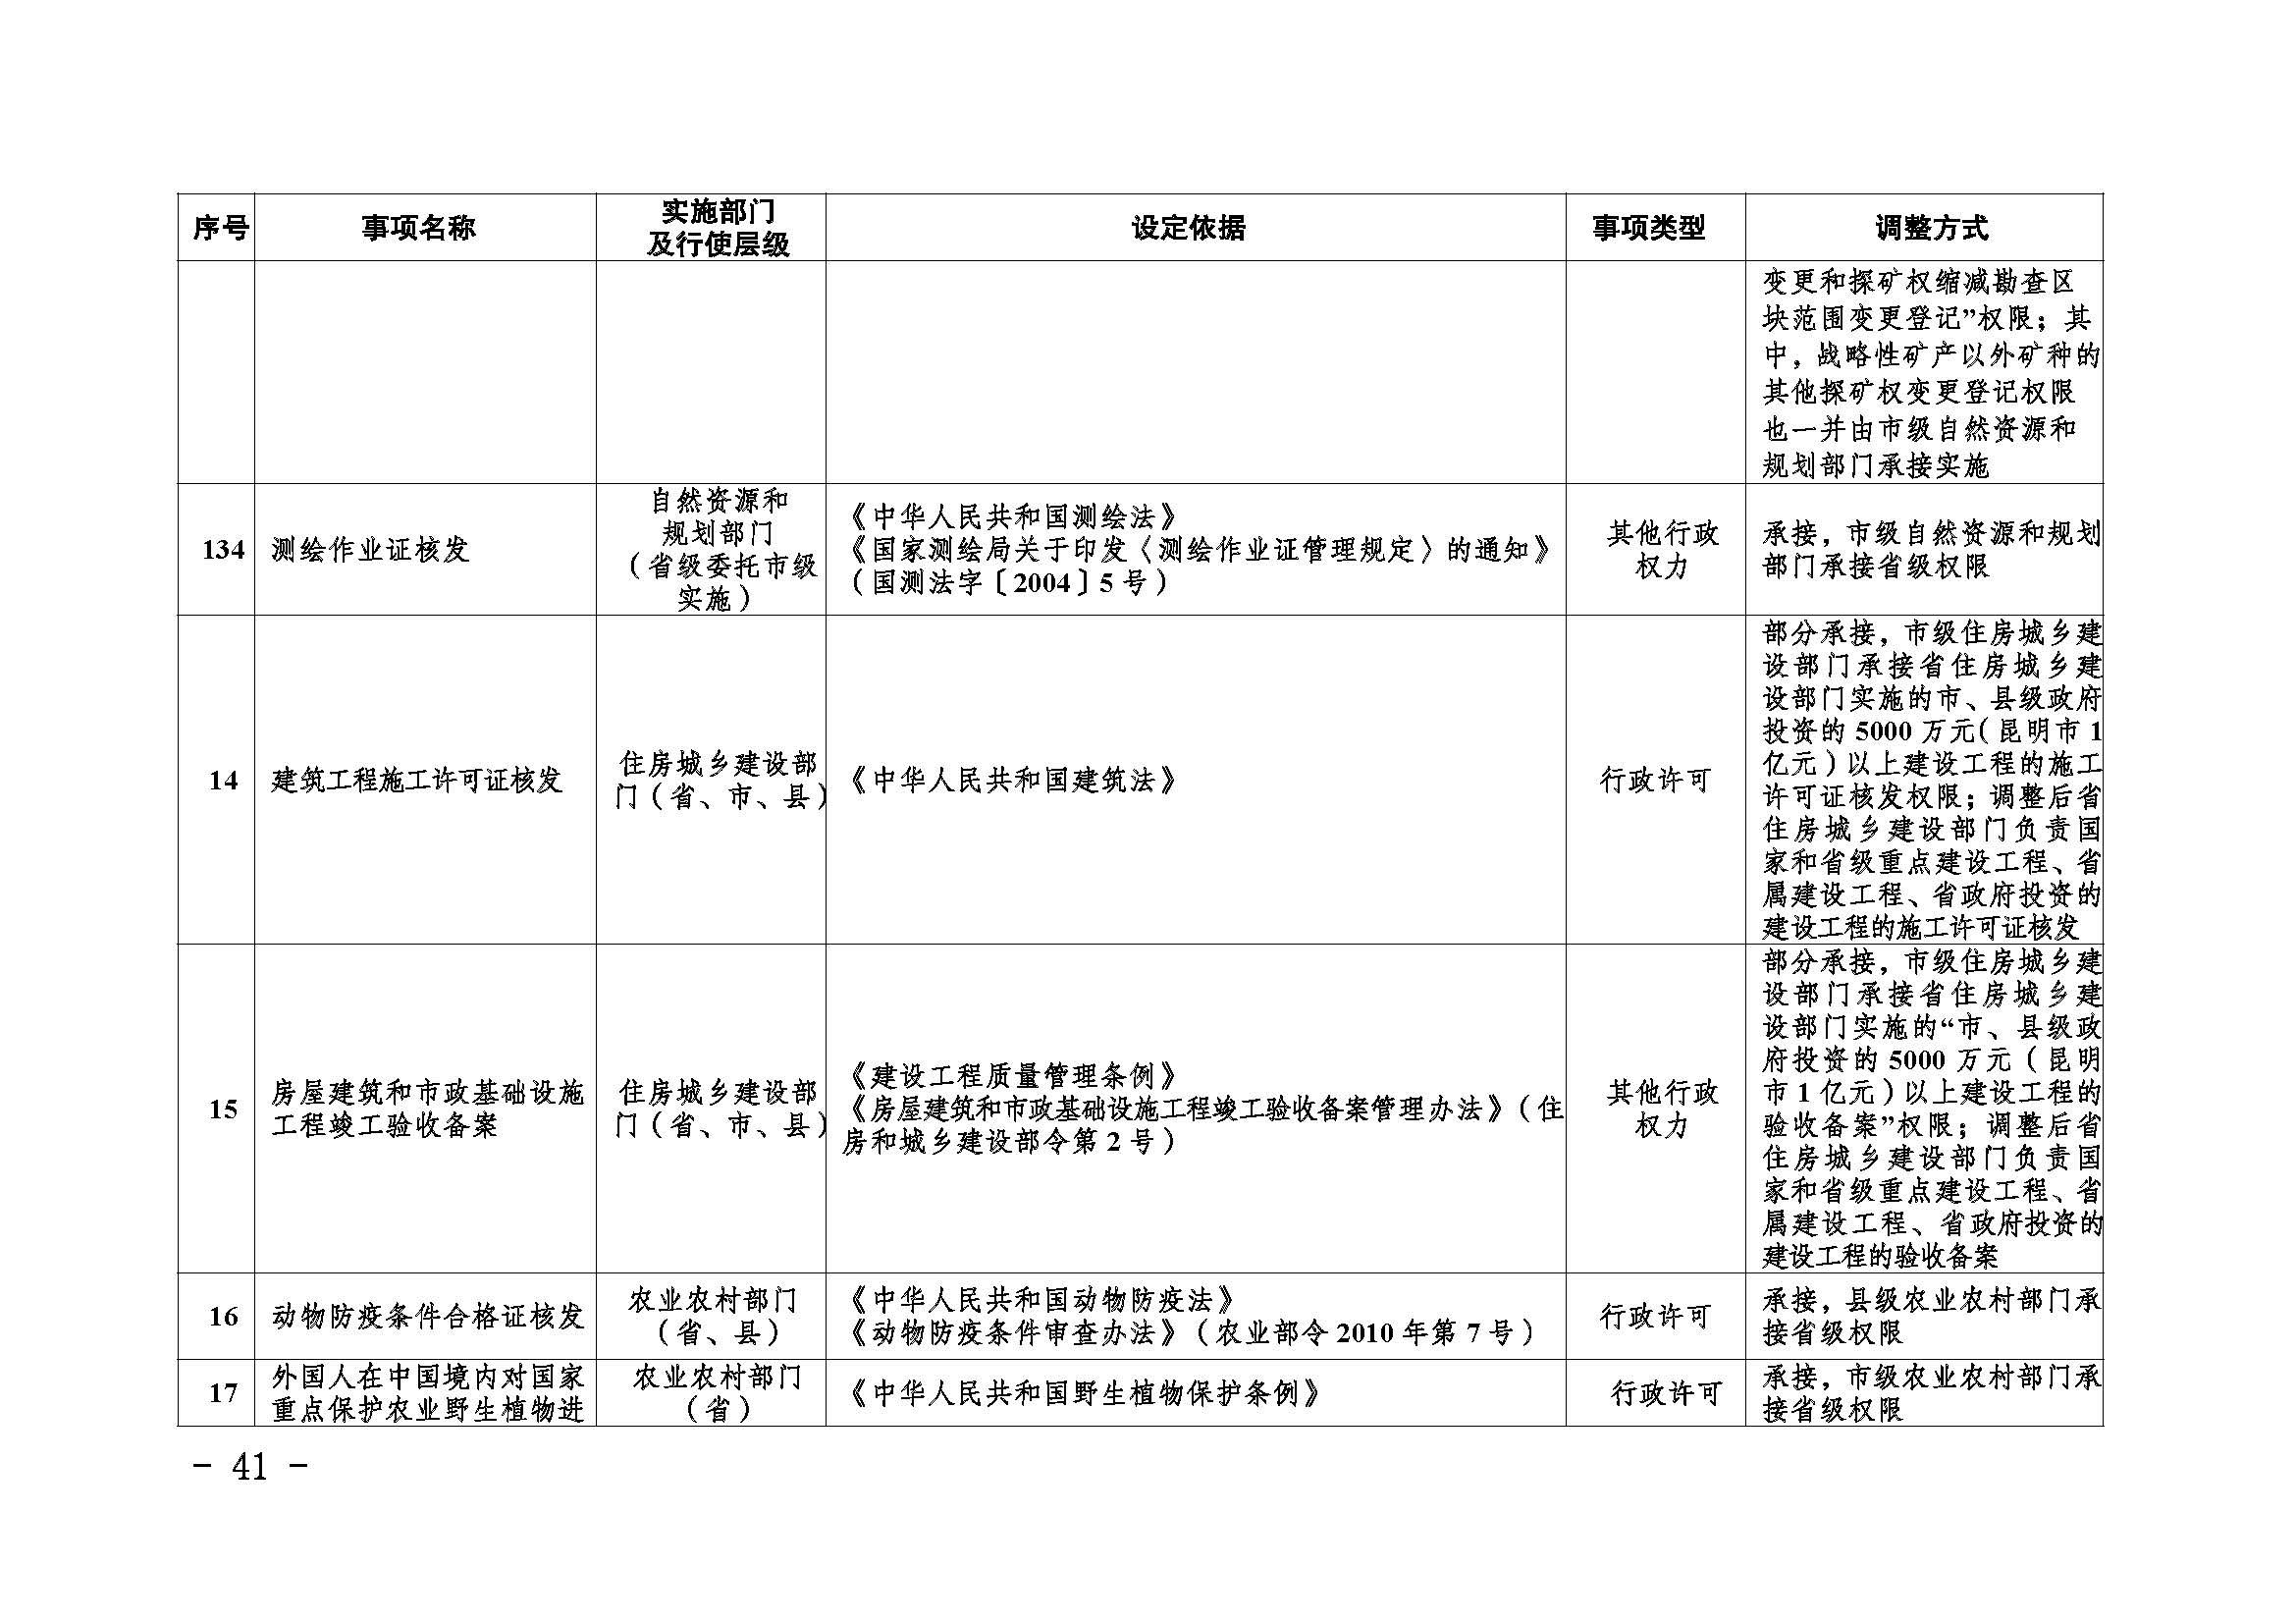 临沧市人民政府办公室关于做好调整370项行政权力事项工作的通知_页面_41